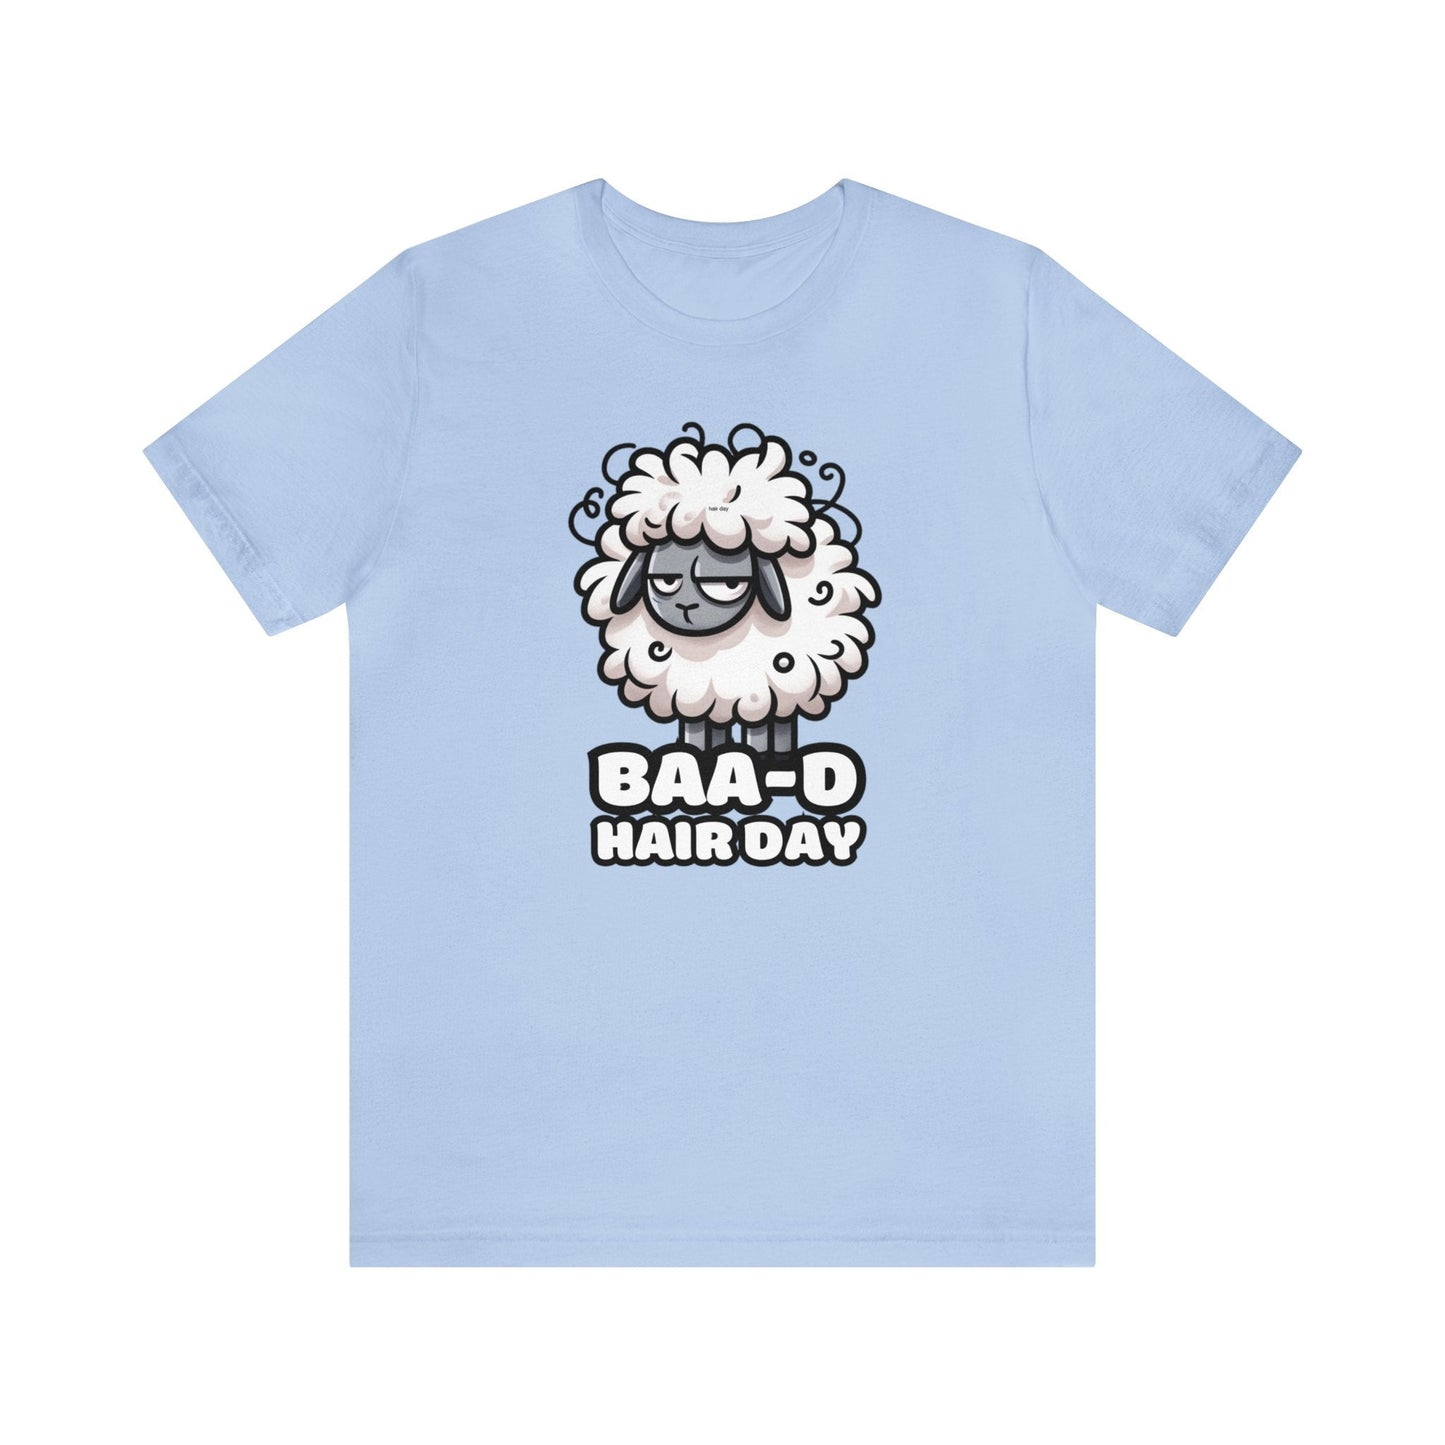 Baa-d Hair - Sheep T-shirt Baby Blue / S